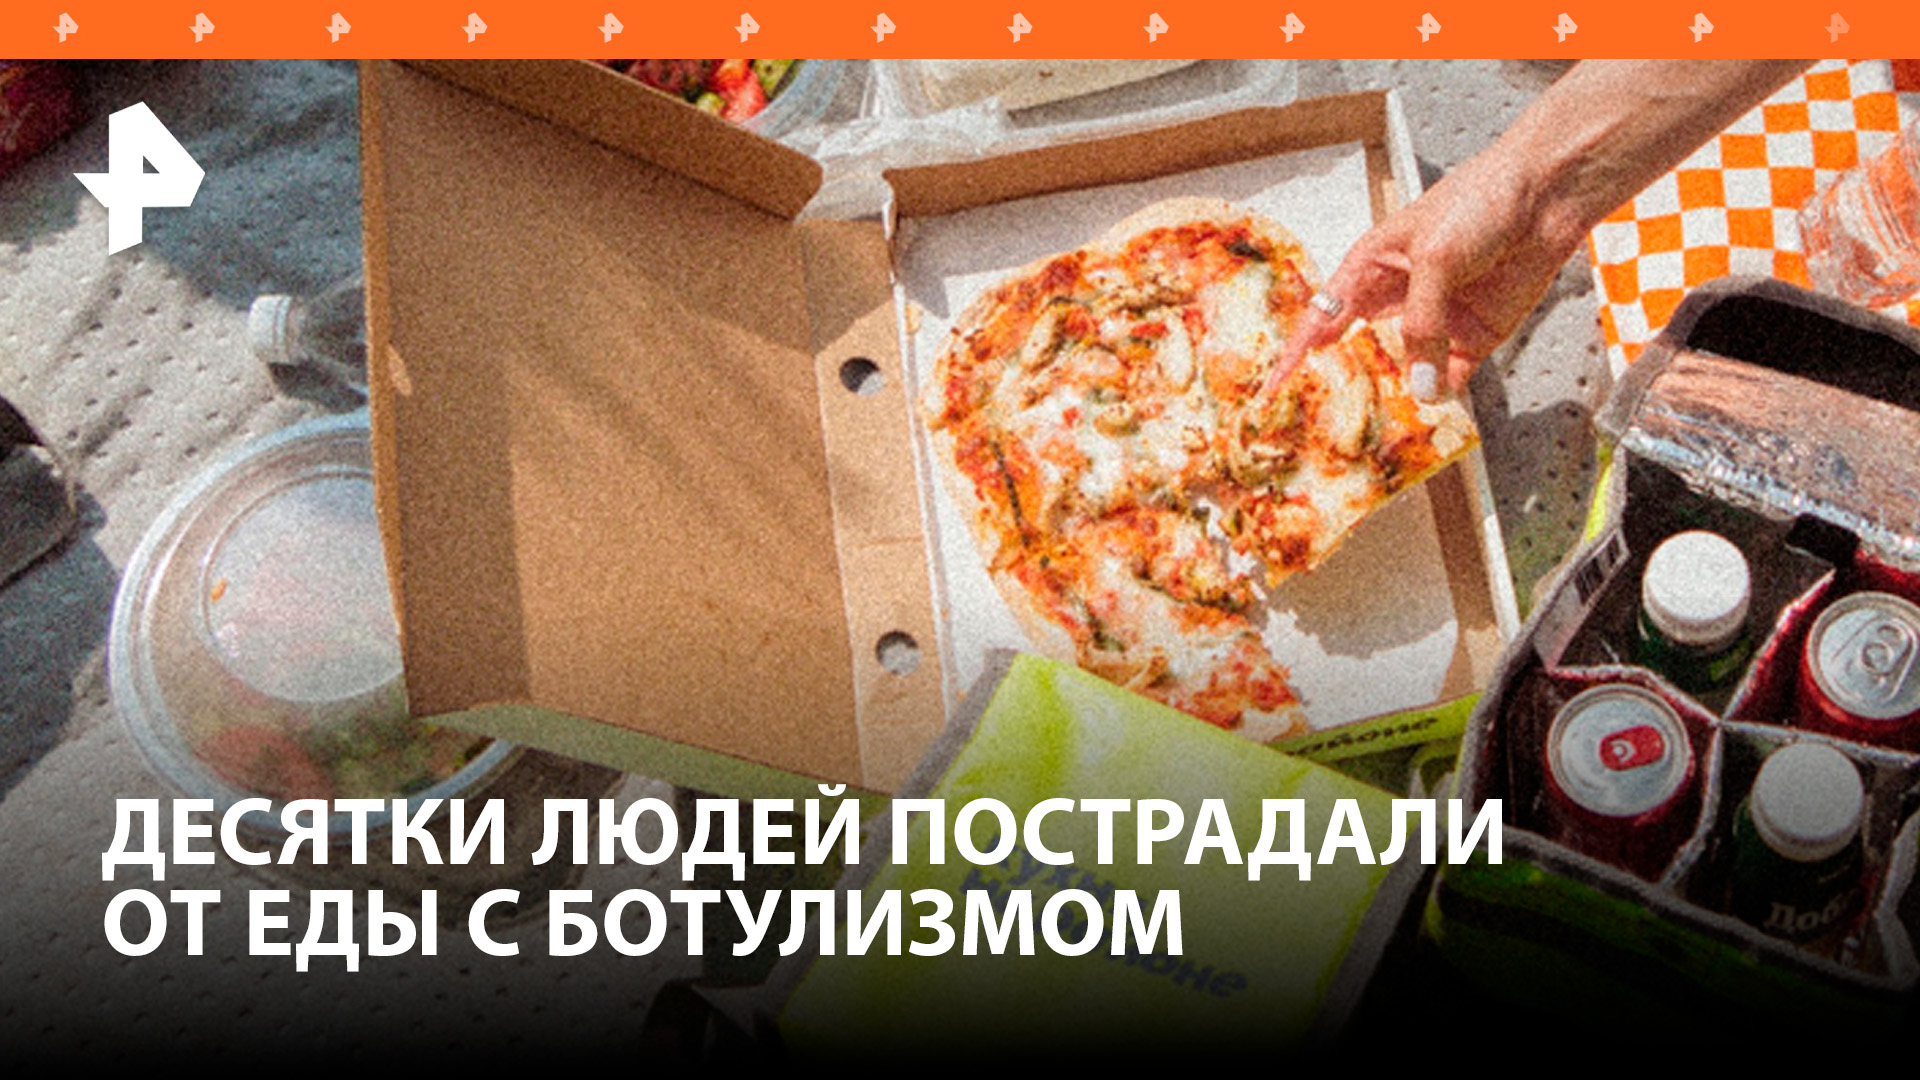 Число пострадавших от еды из доставки увеличилось до 149 человек / РЕН Новости